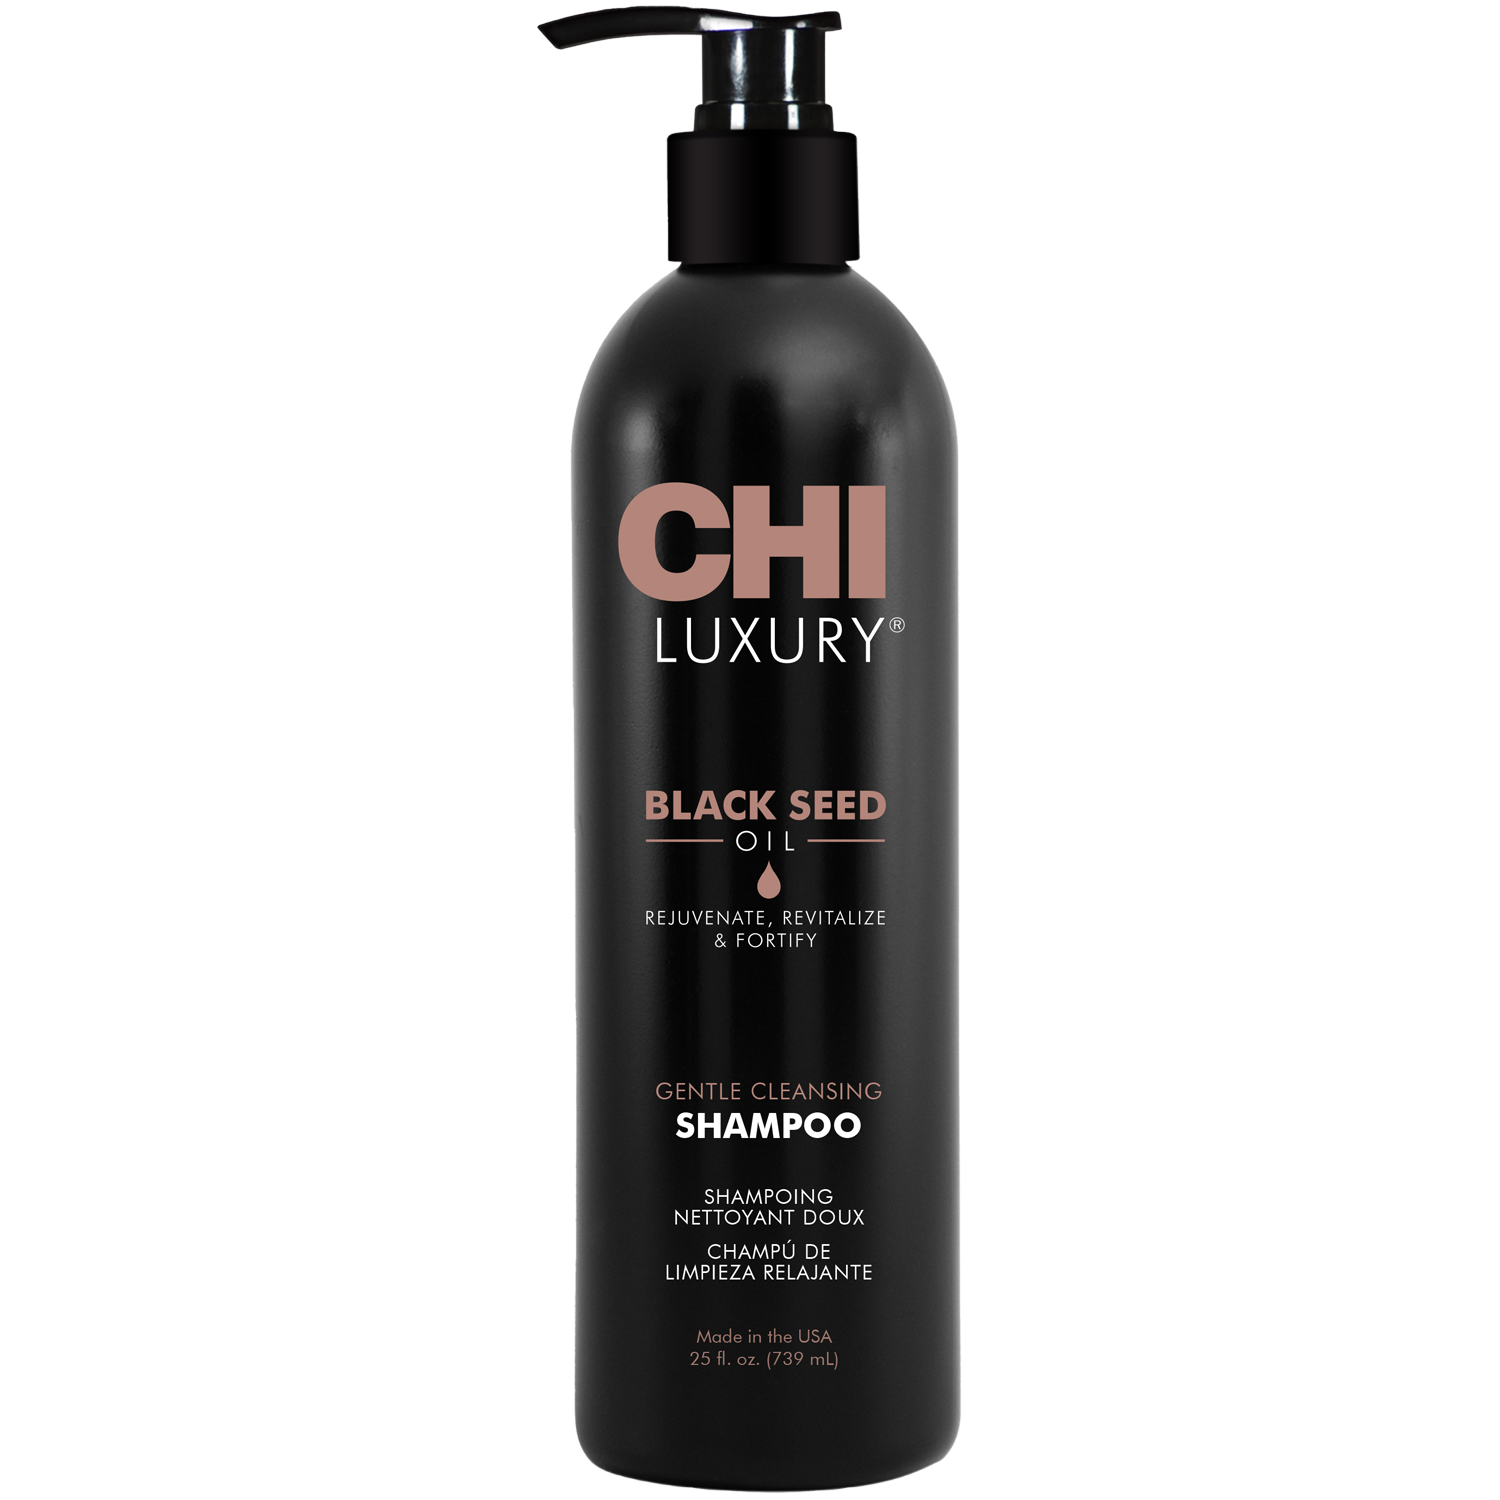 Chi Luxury очищающий шампунь для волос, 739 мл шампунь для волос 739 мл chi luxury black seed oil